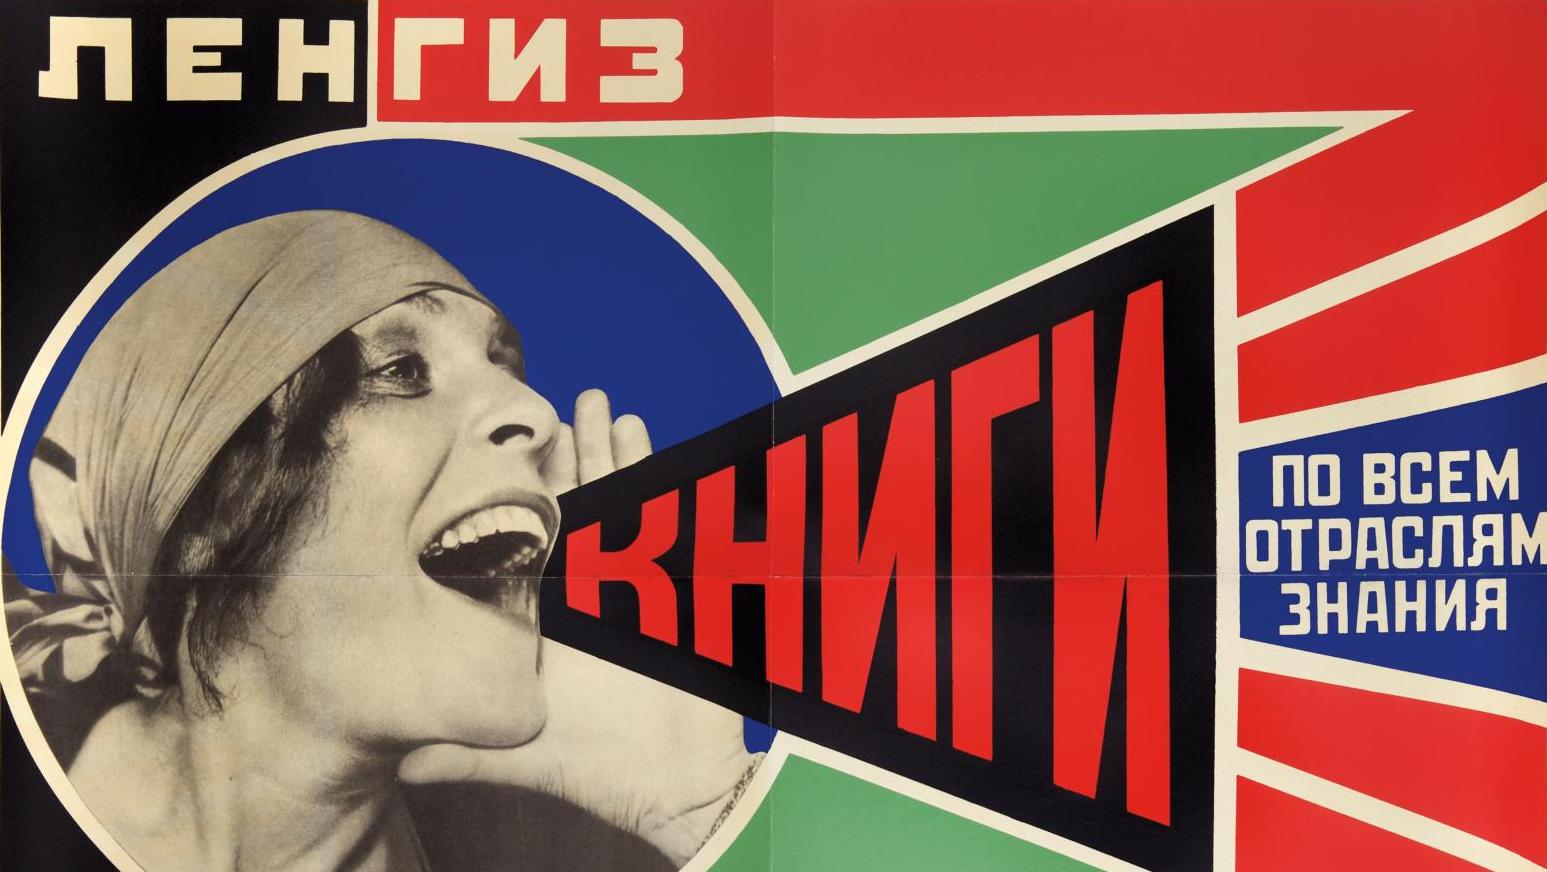 Alexandr Rodchenko (1891-1956) Lengiz : Knigi po vsem otraslyam znaniya lengiz («Des... Les avant-gardes russes à l'affiche d'une collection 